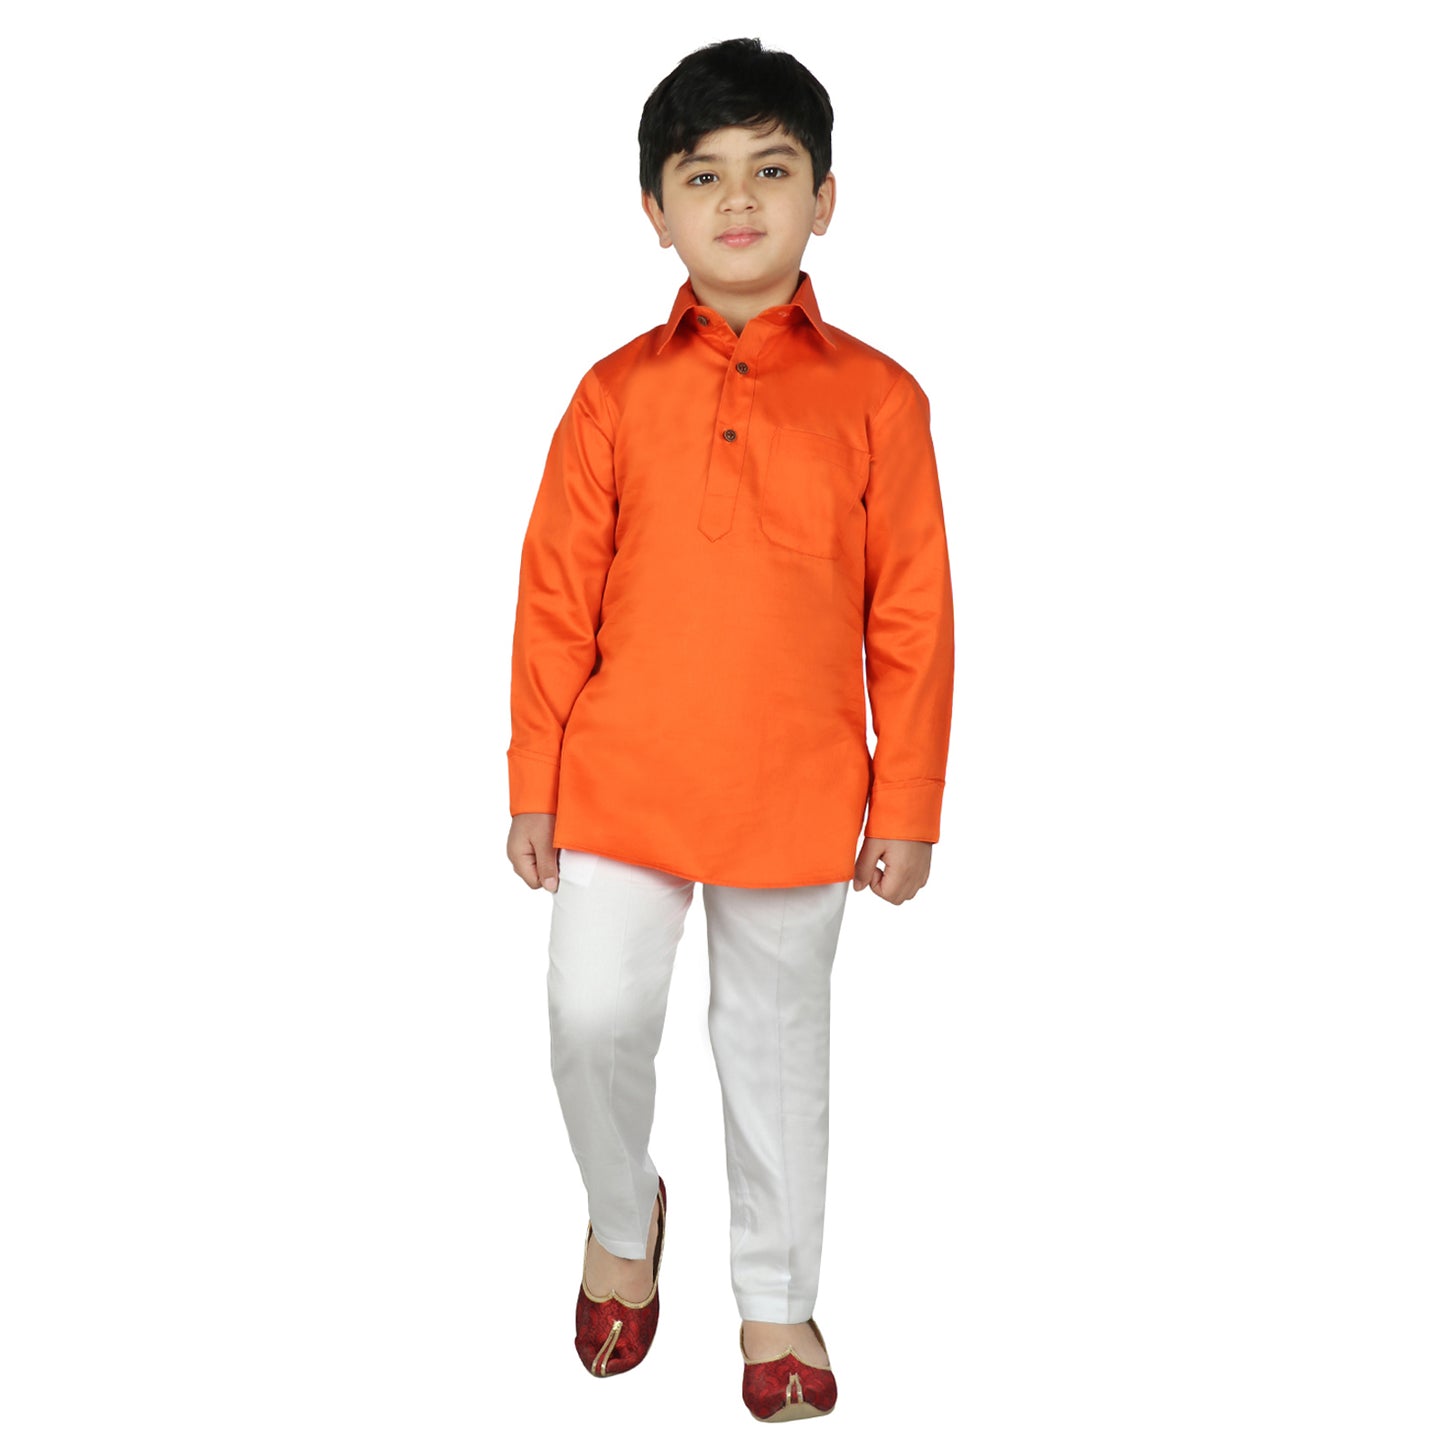 SG YUVRAJ Pathani Suits For Boys (YP-112)